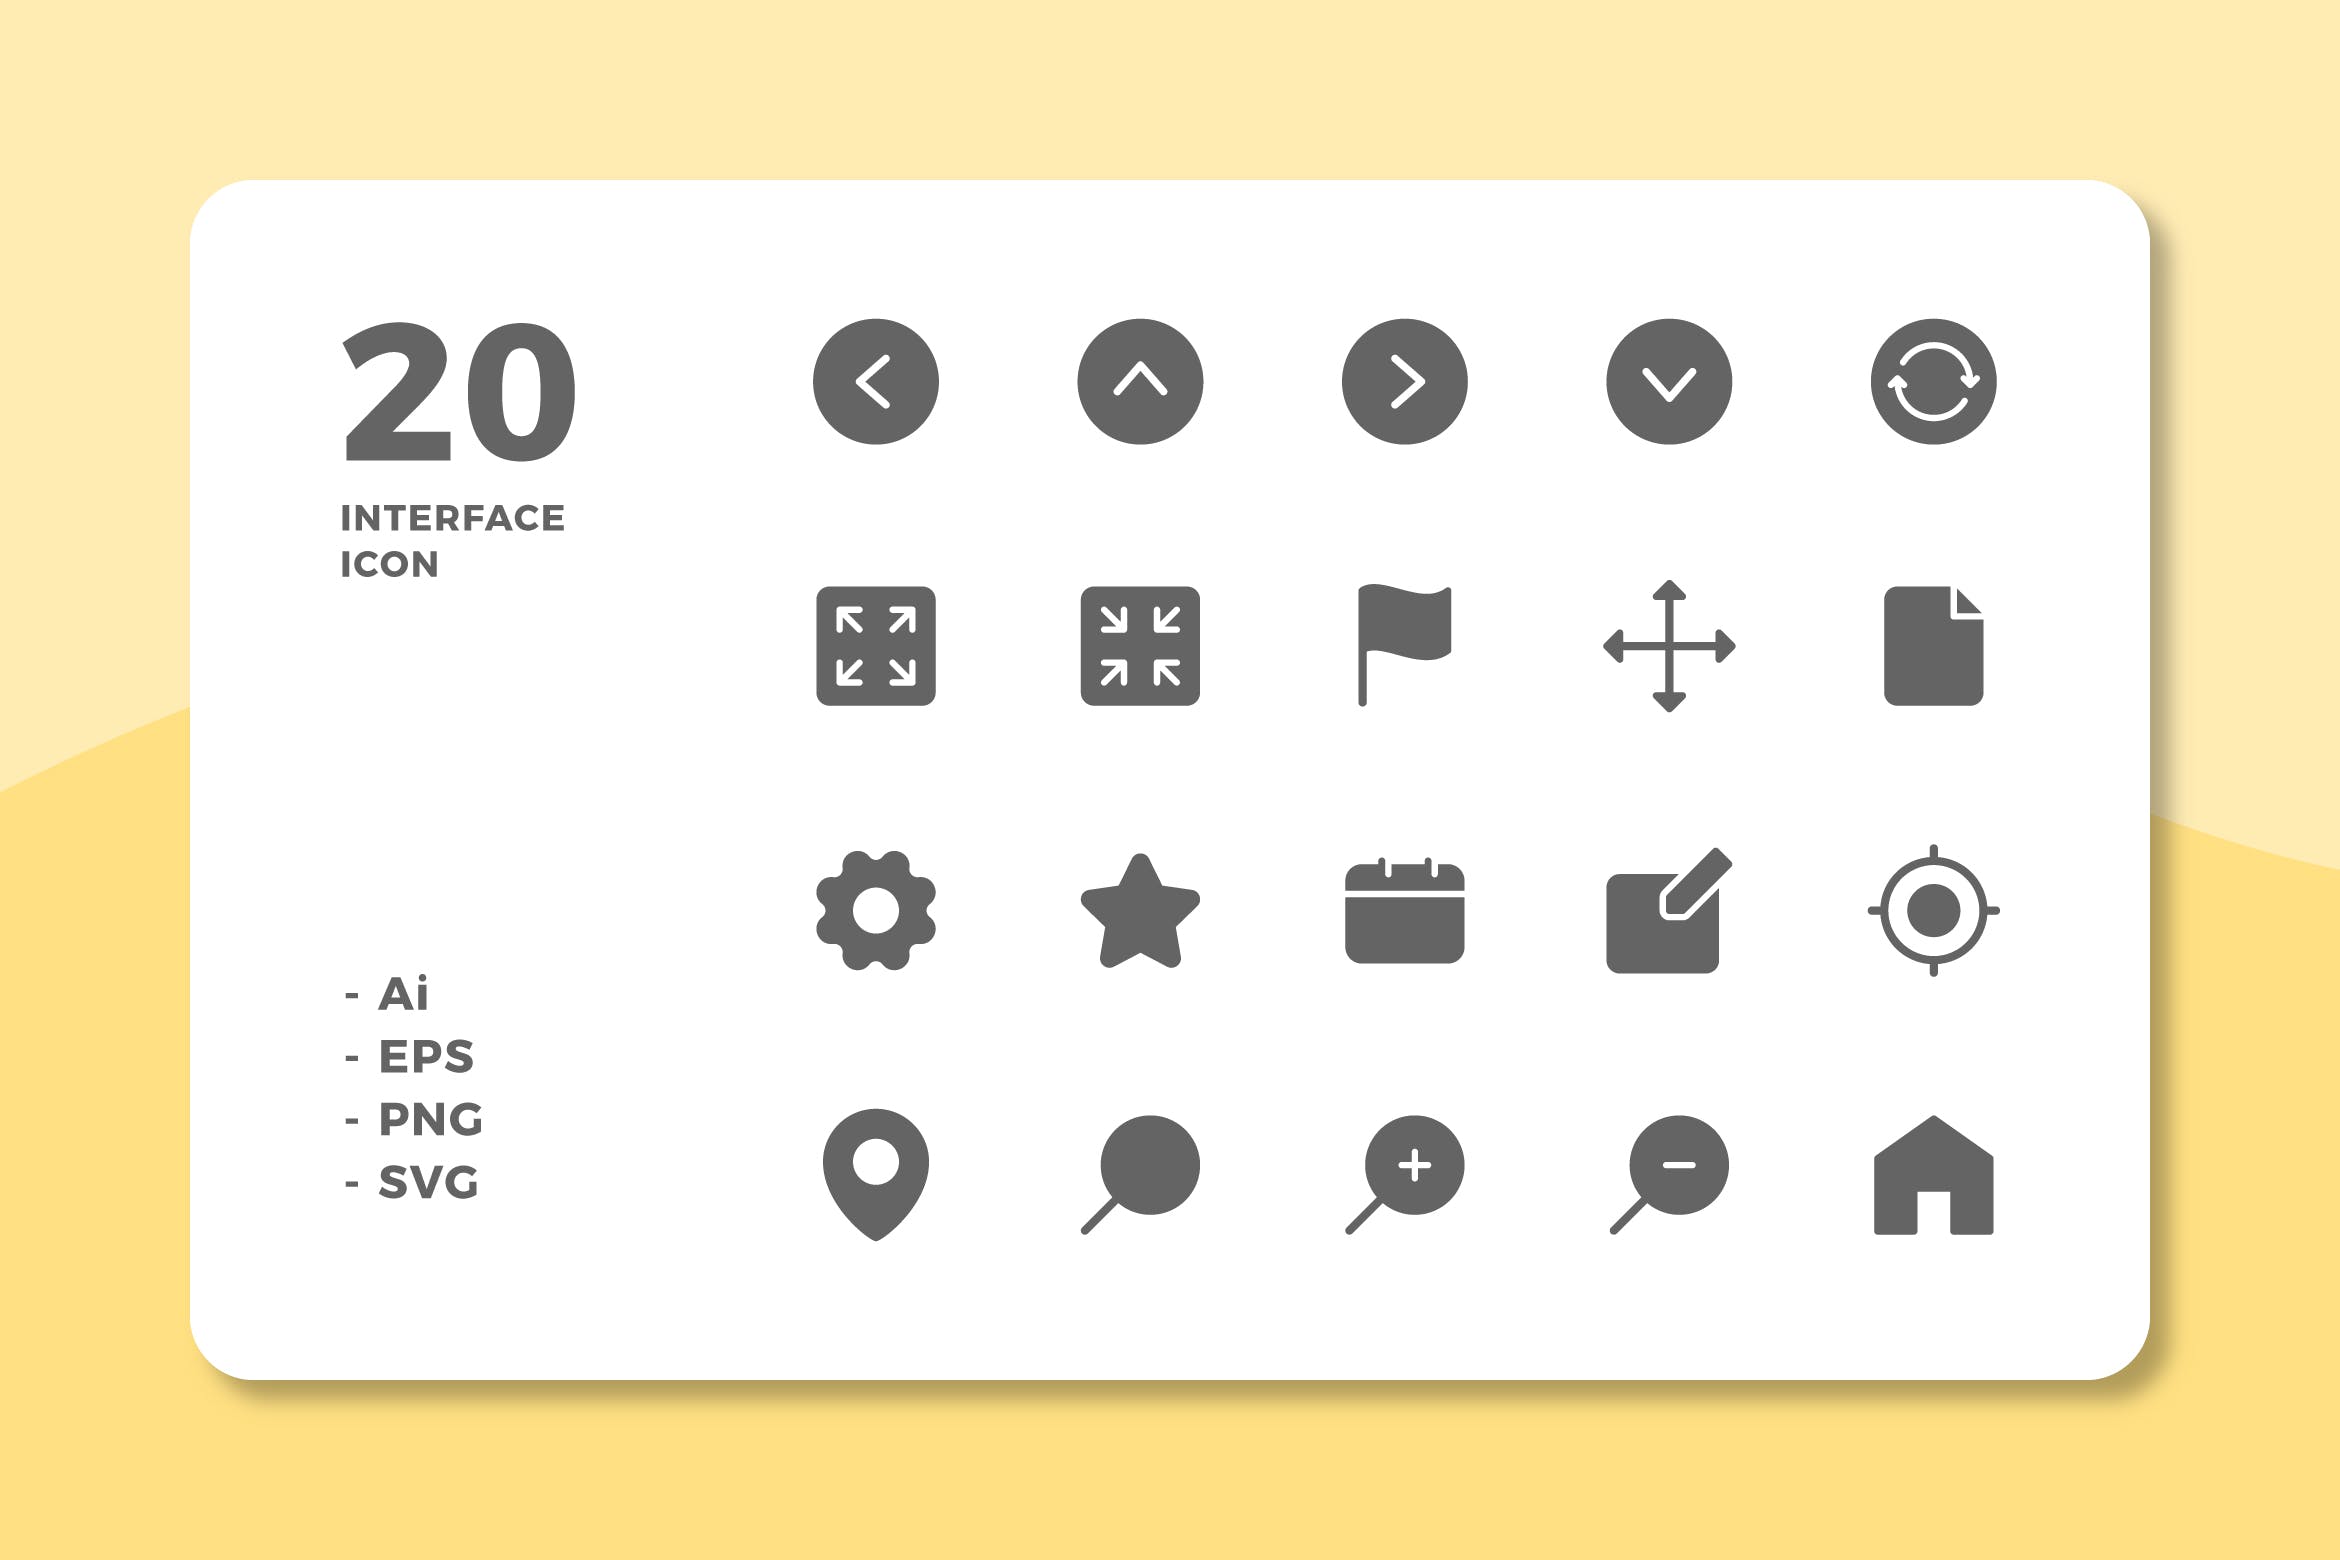 20枚UI界面设计APP操作选项16设计素材网精选图标v1 20 Interface Icons Vol.1 (Solid)插图